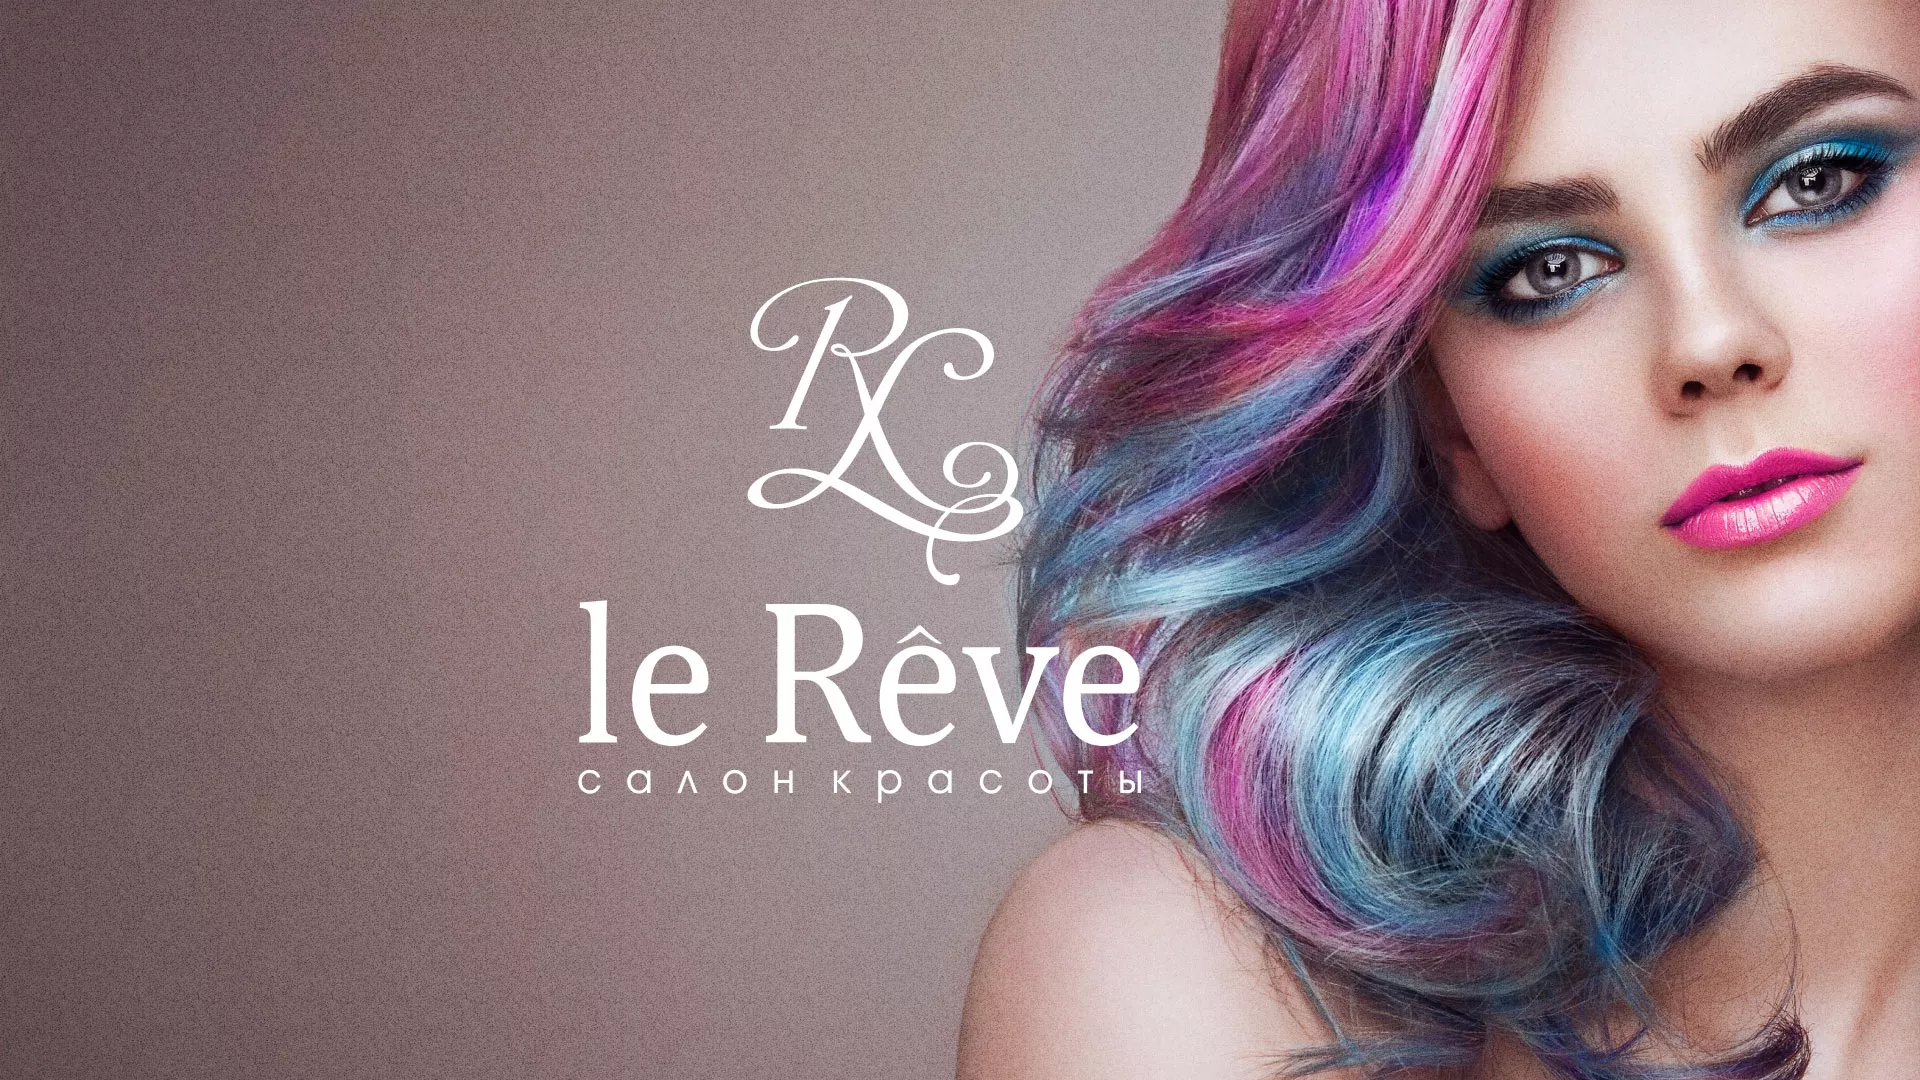 Создание сайта для салона красоты «Le Reve» в Мурманске